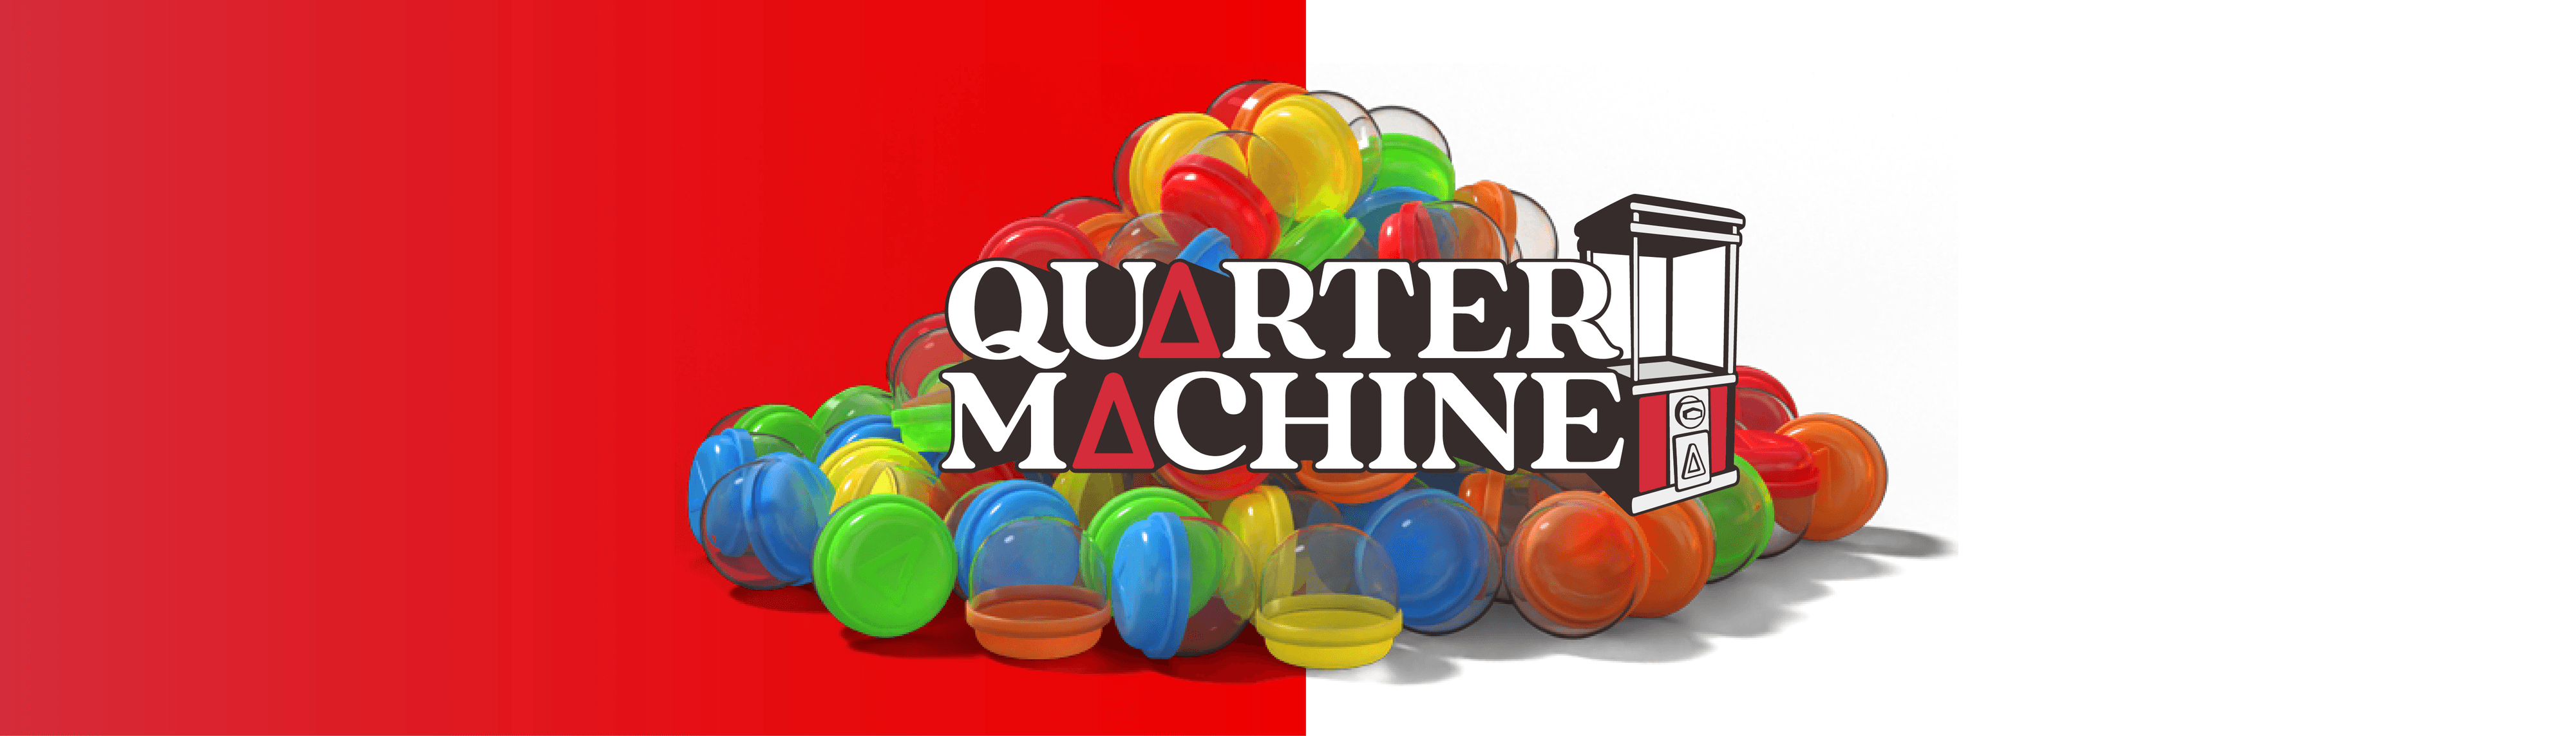 Quartermachine バナー